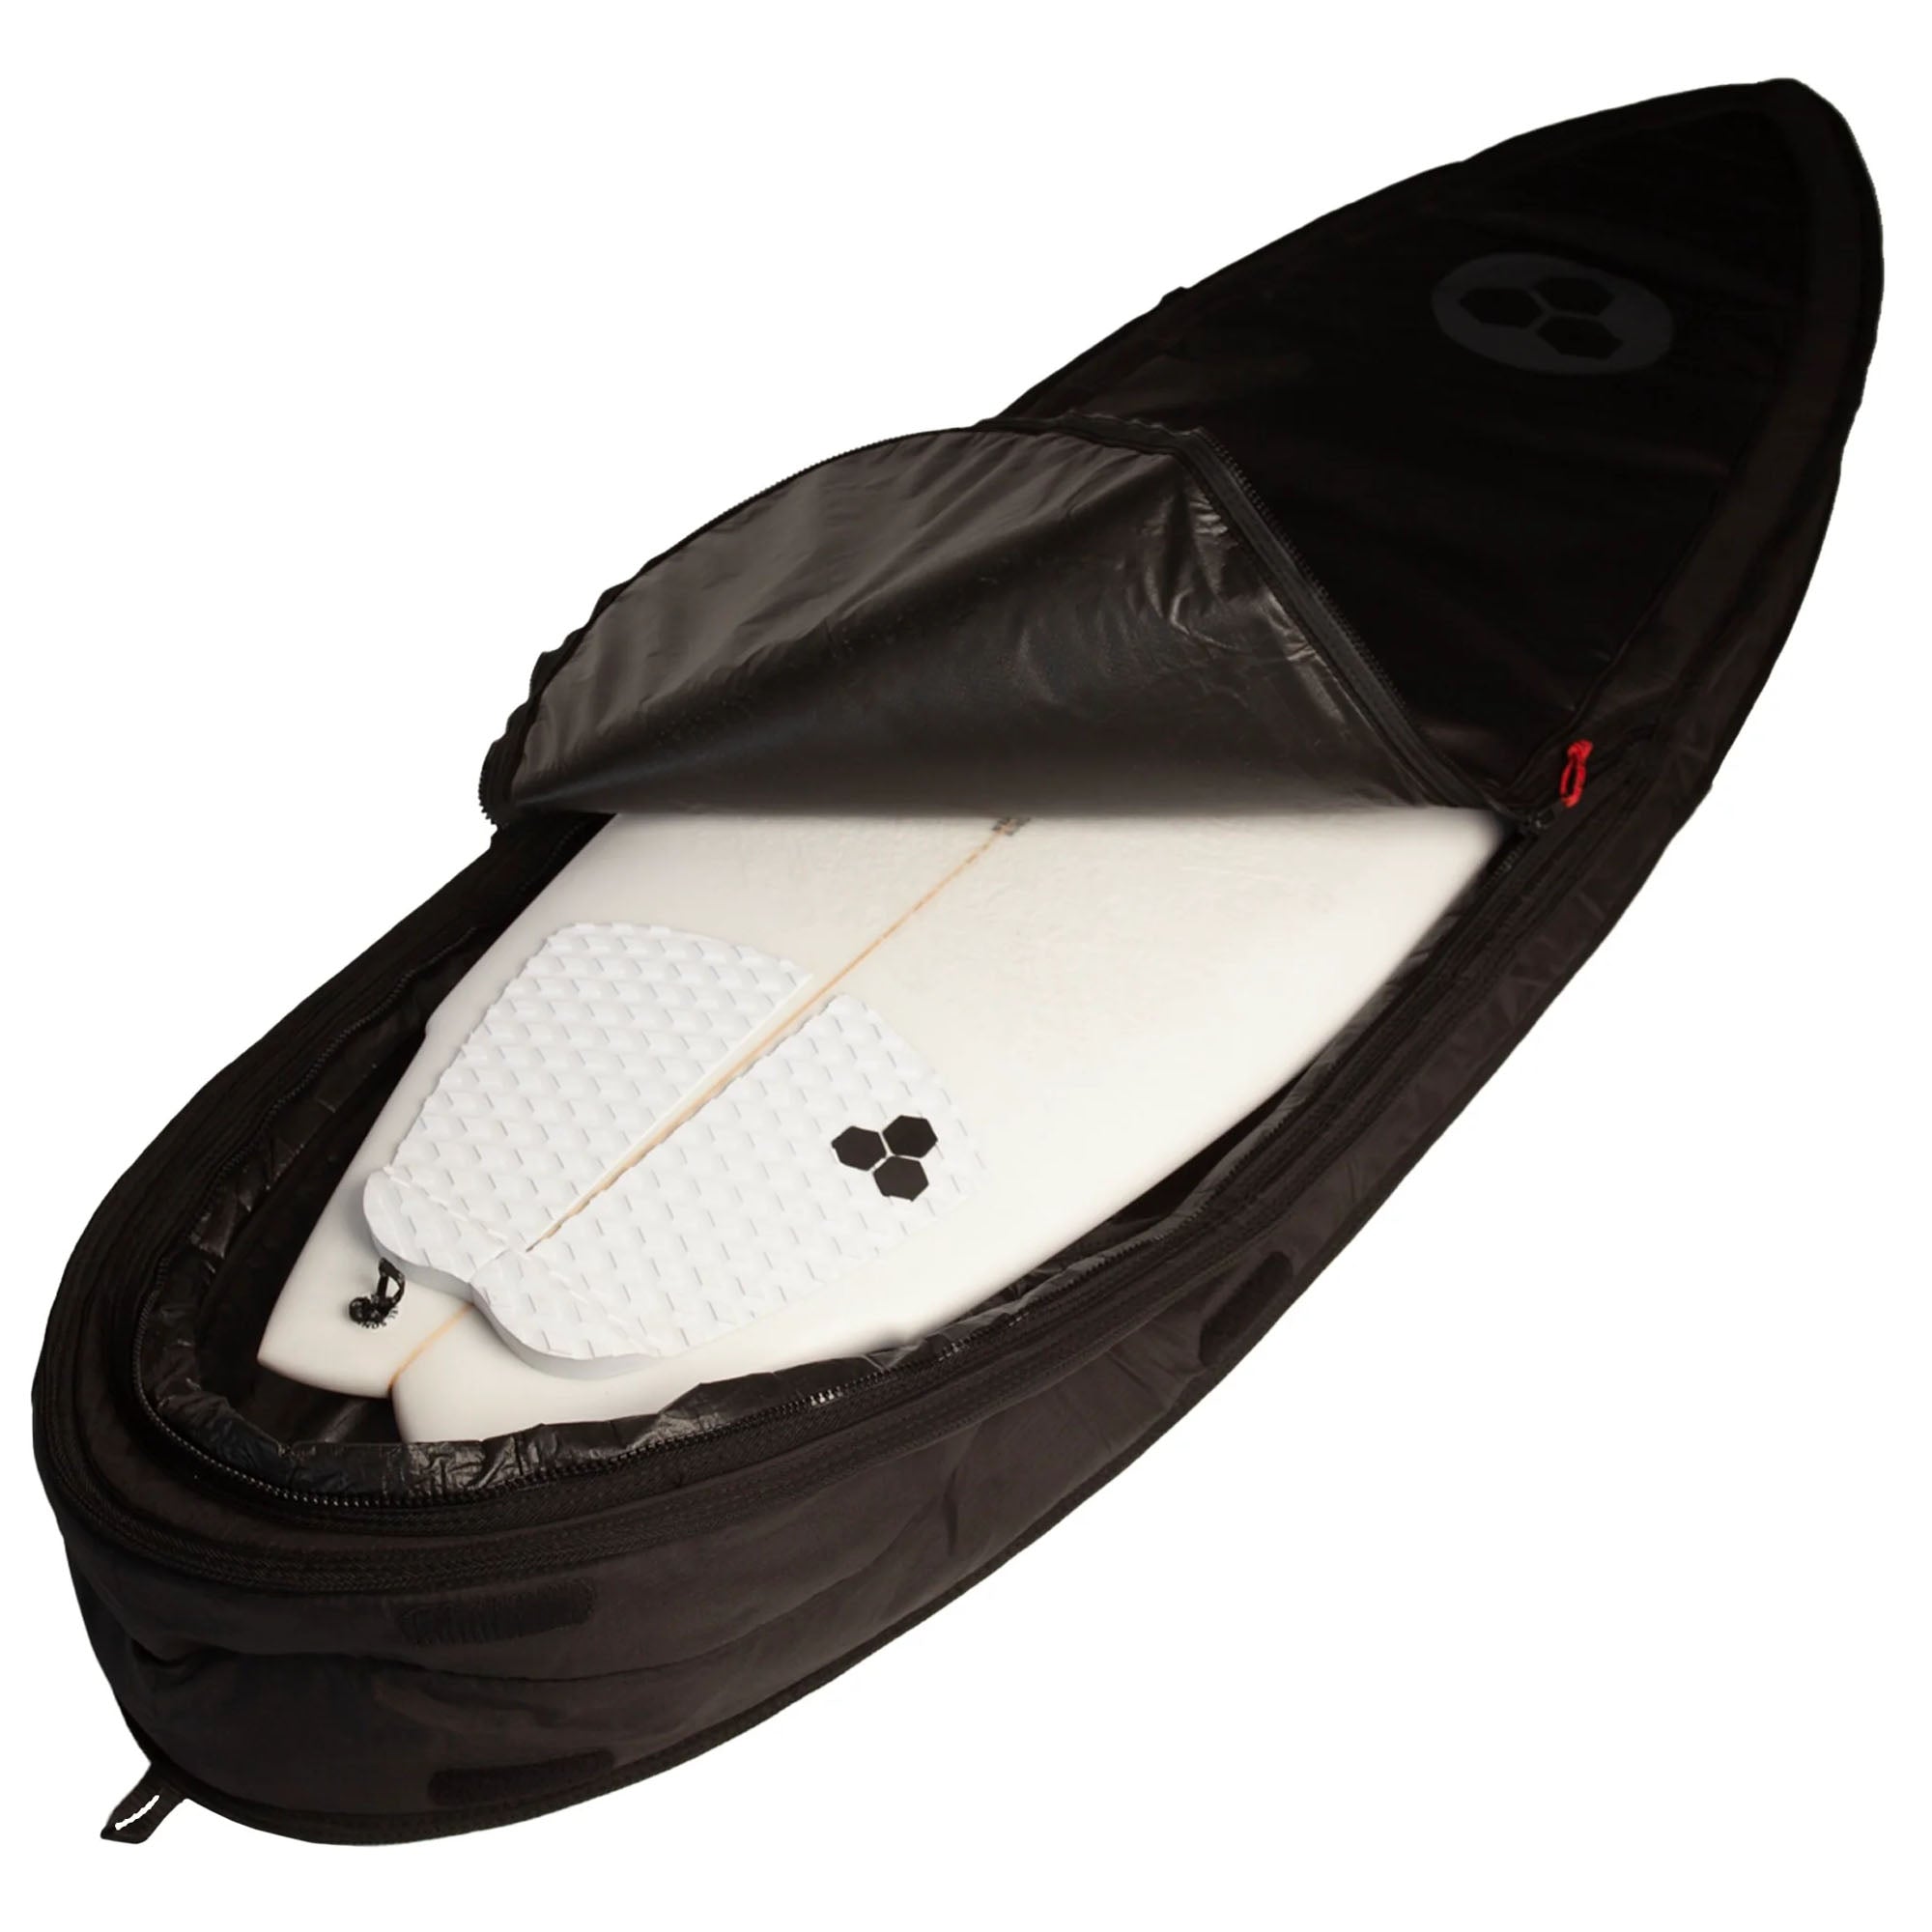 Channel Islands Traveler Single/Double Shortboard Surfboard Bag